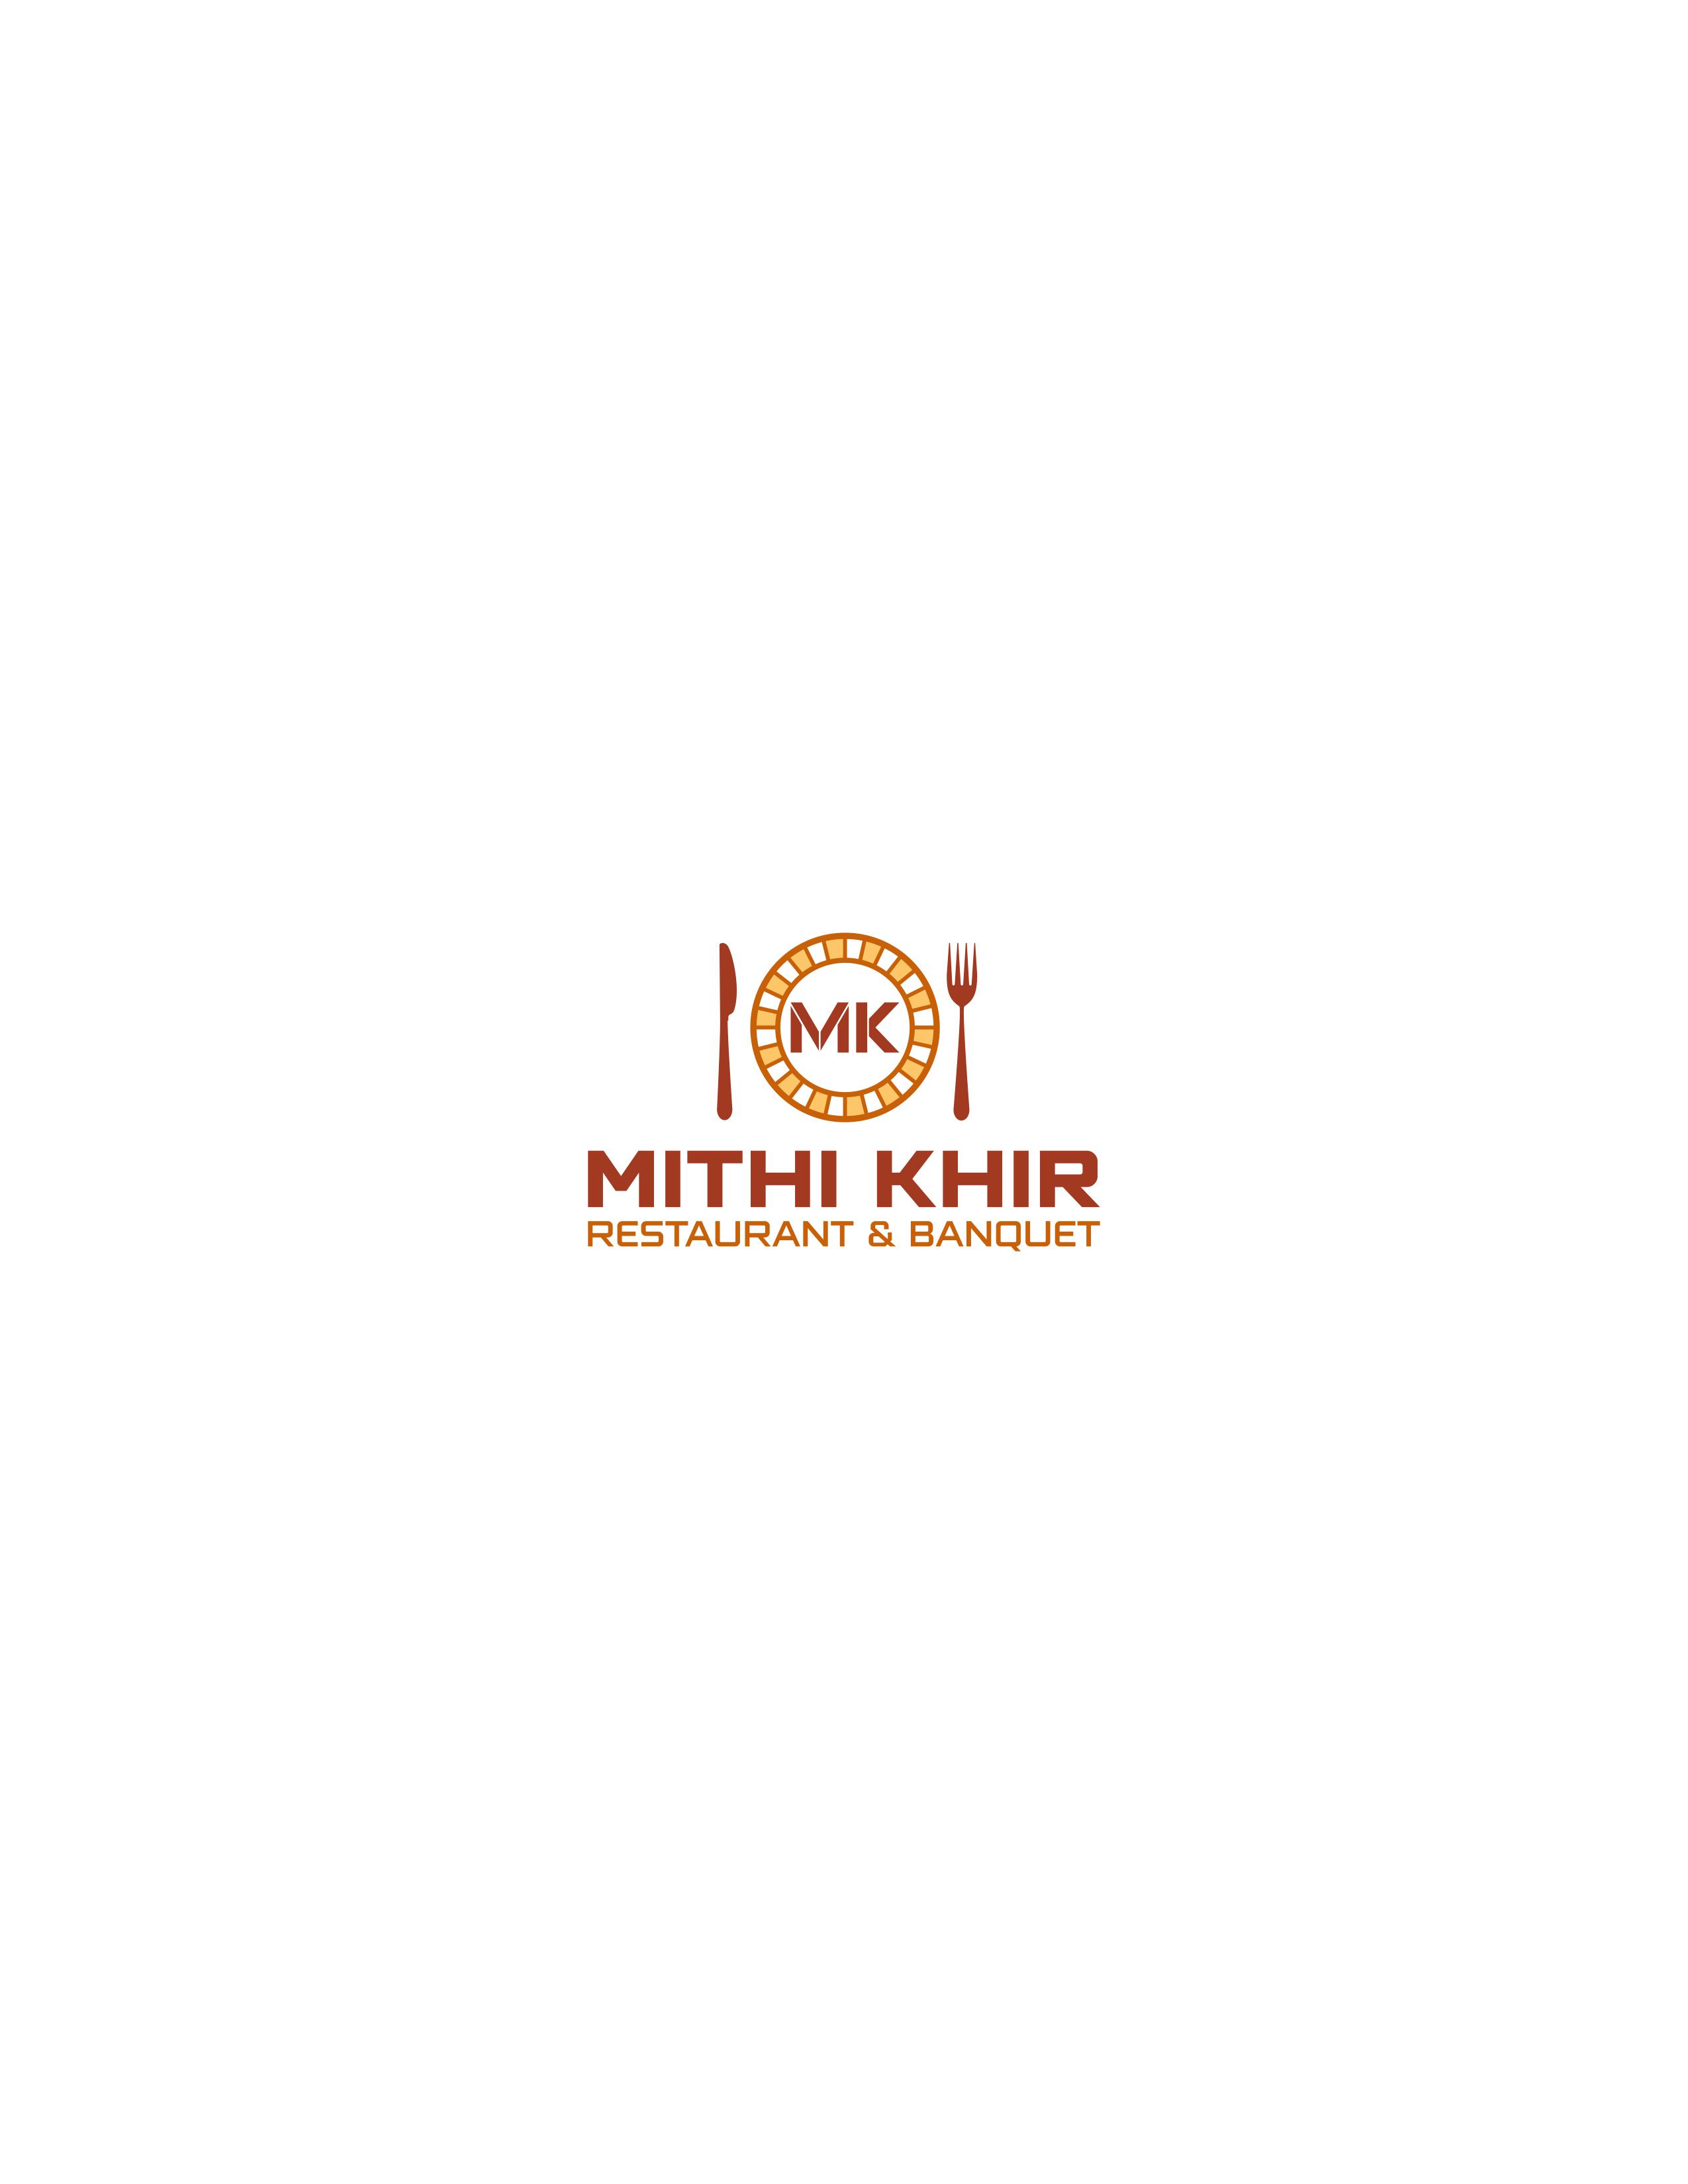 Mithi khir